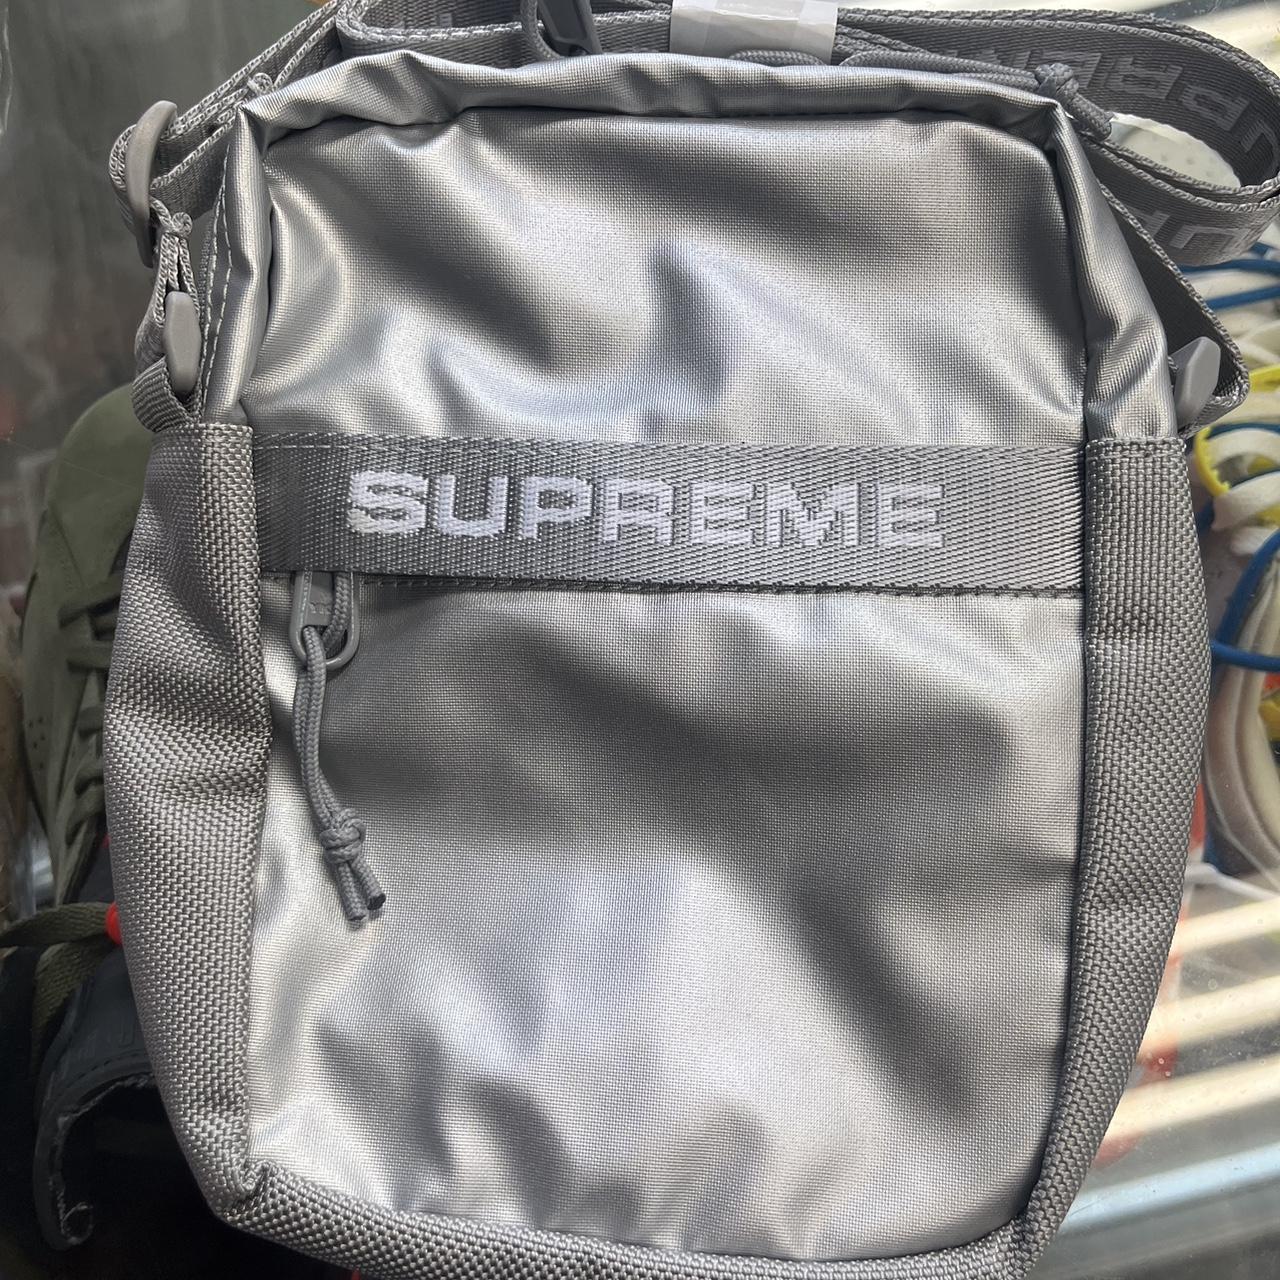 Supreme shoulder bag Brand new silver supreme - Depop